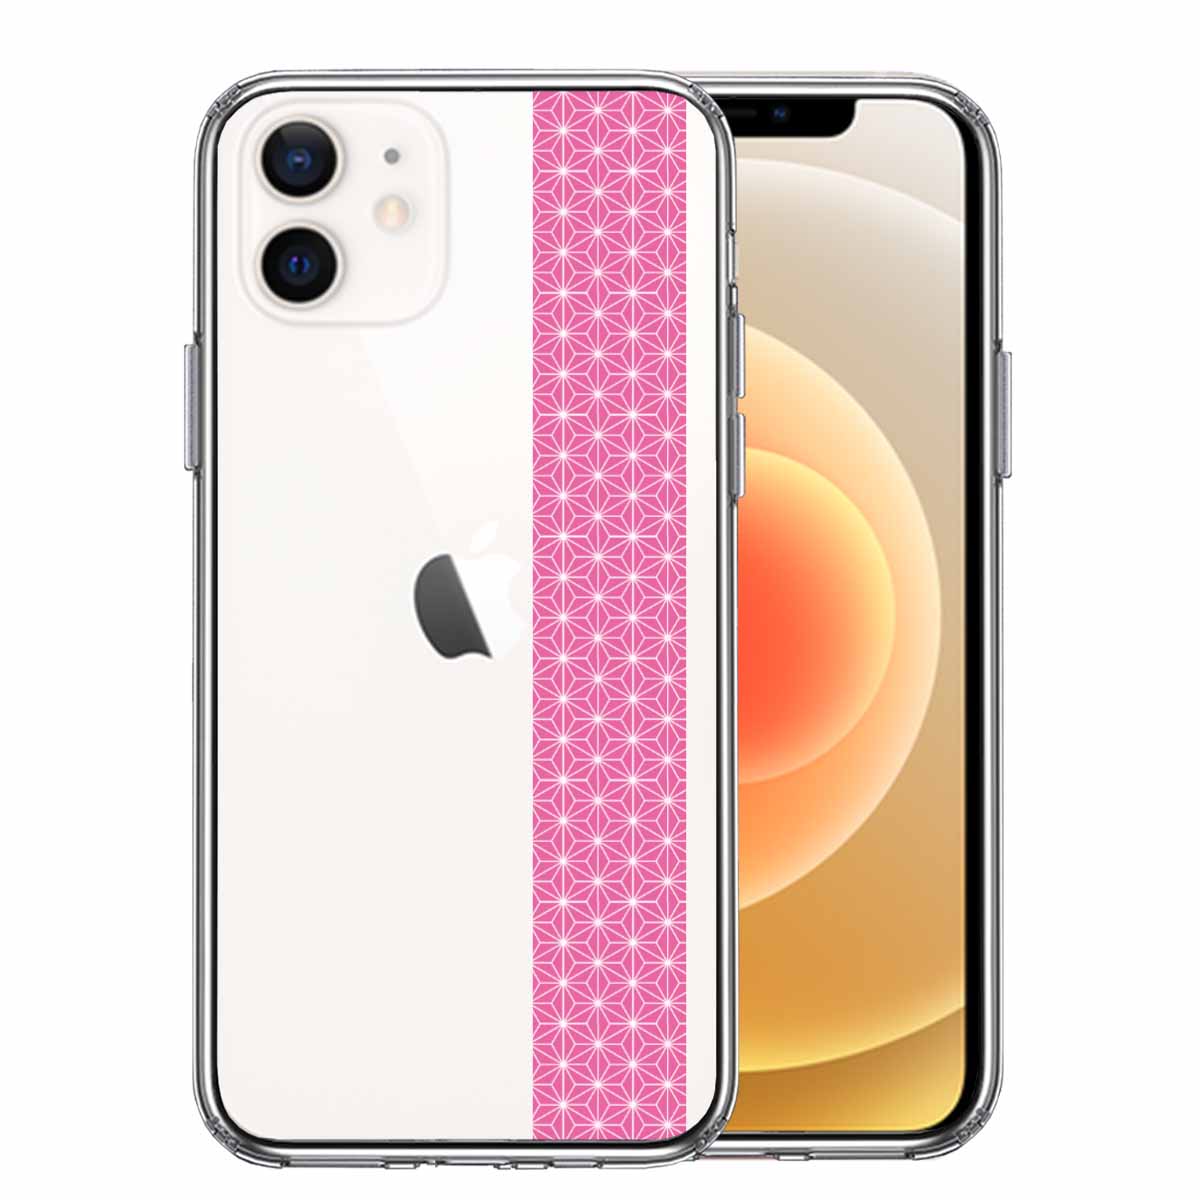 iPhone12mini 側面ソフト 背面ハード ハイブリッド クリア ケース 和柄 帯  麻の葉模様 桃色 ピンク